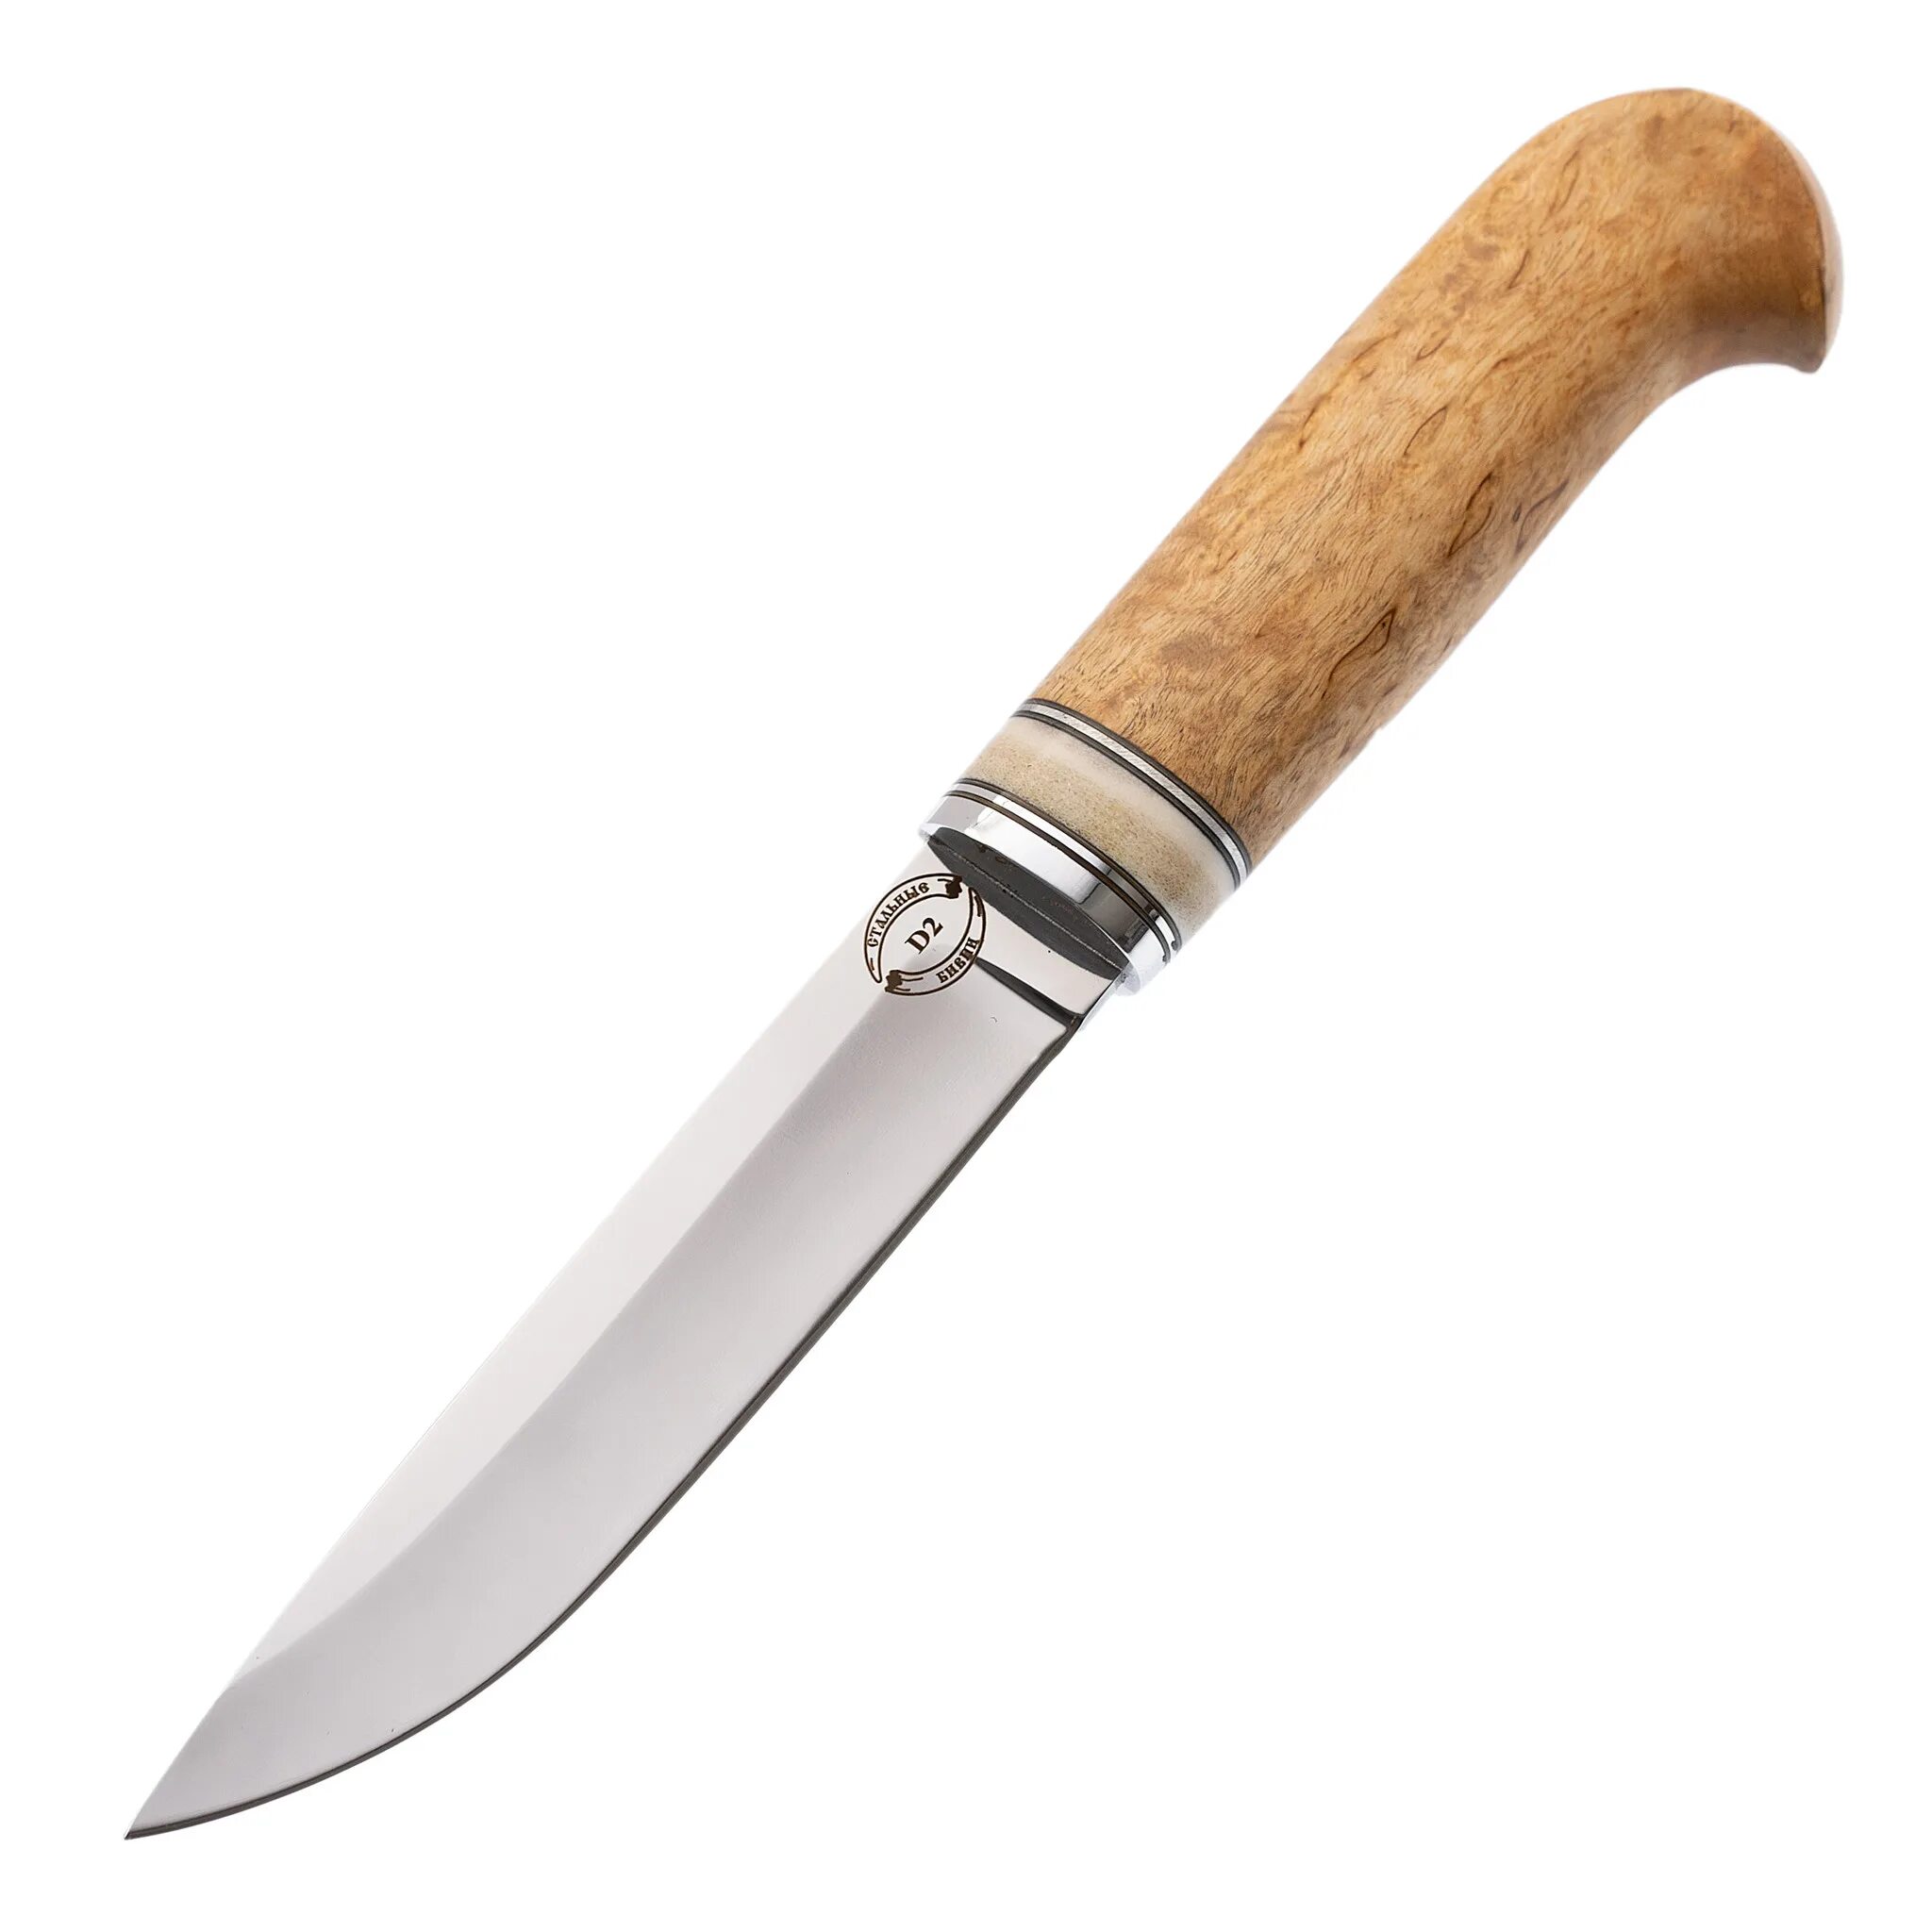 Ножи стальные бивни купить. Финский нож стальные бивни. Стальные бивни финский нож 6. Ножи фирмы стальные бивни. Финский нож номер 6 от стальные бивни тест.